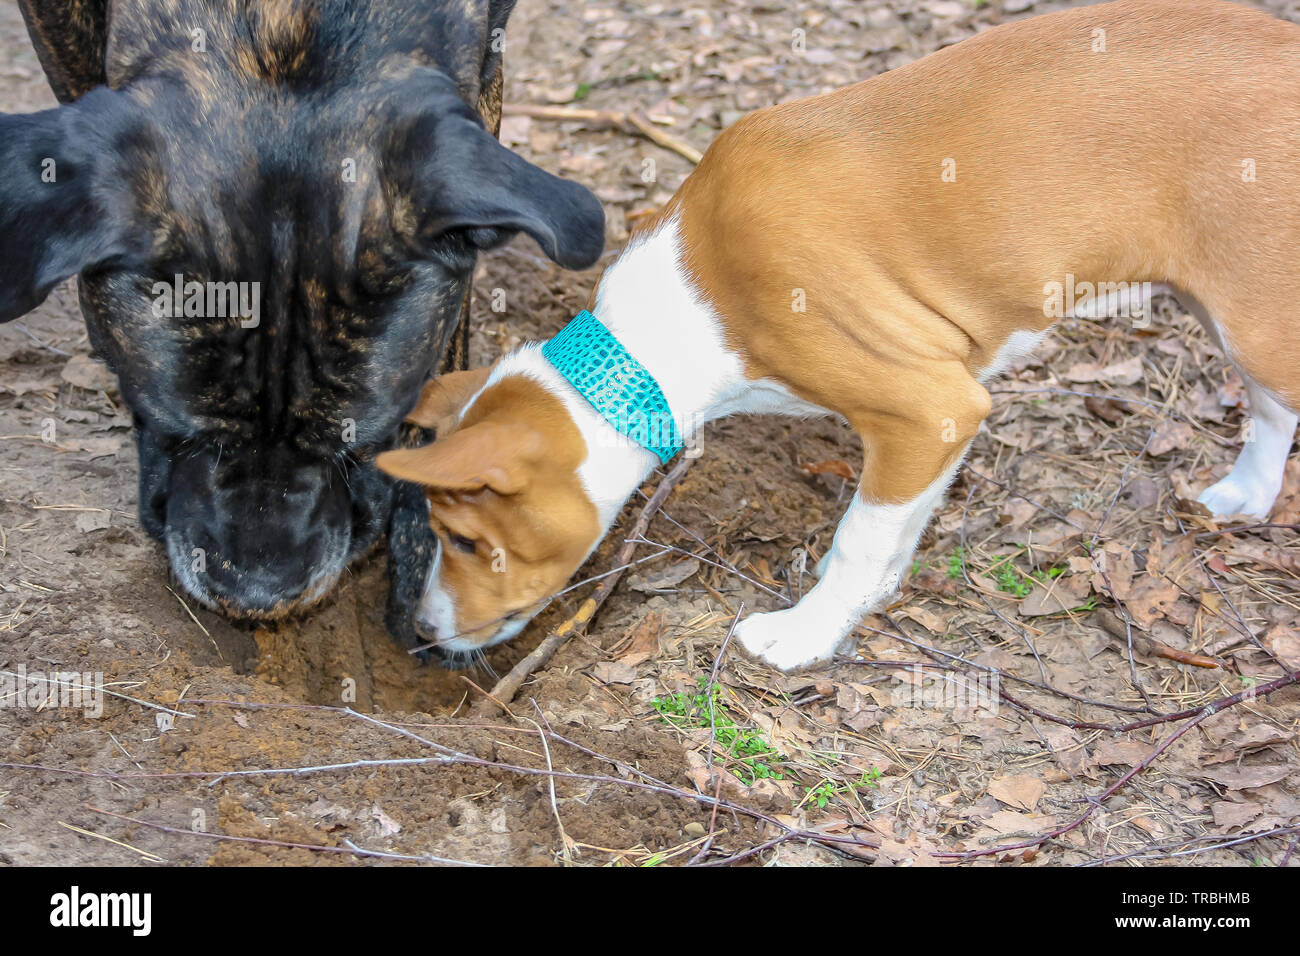 Razza Basenji cane e italiano di cane corso insieme giocando nei boschi in primavera Foto Stock